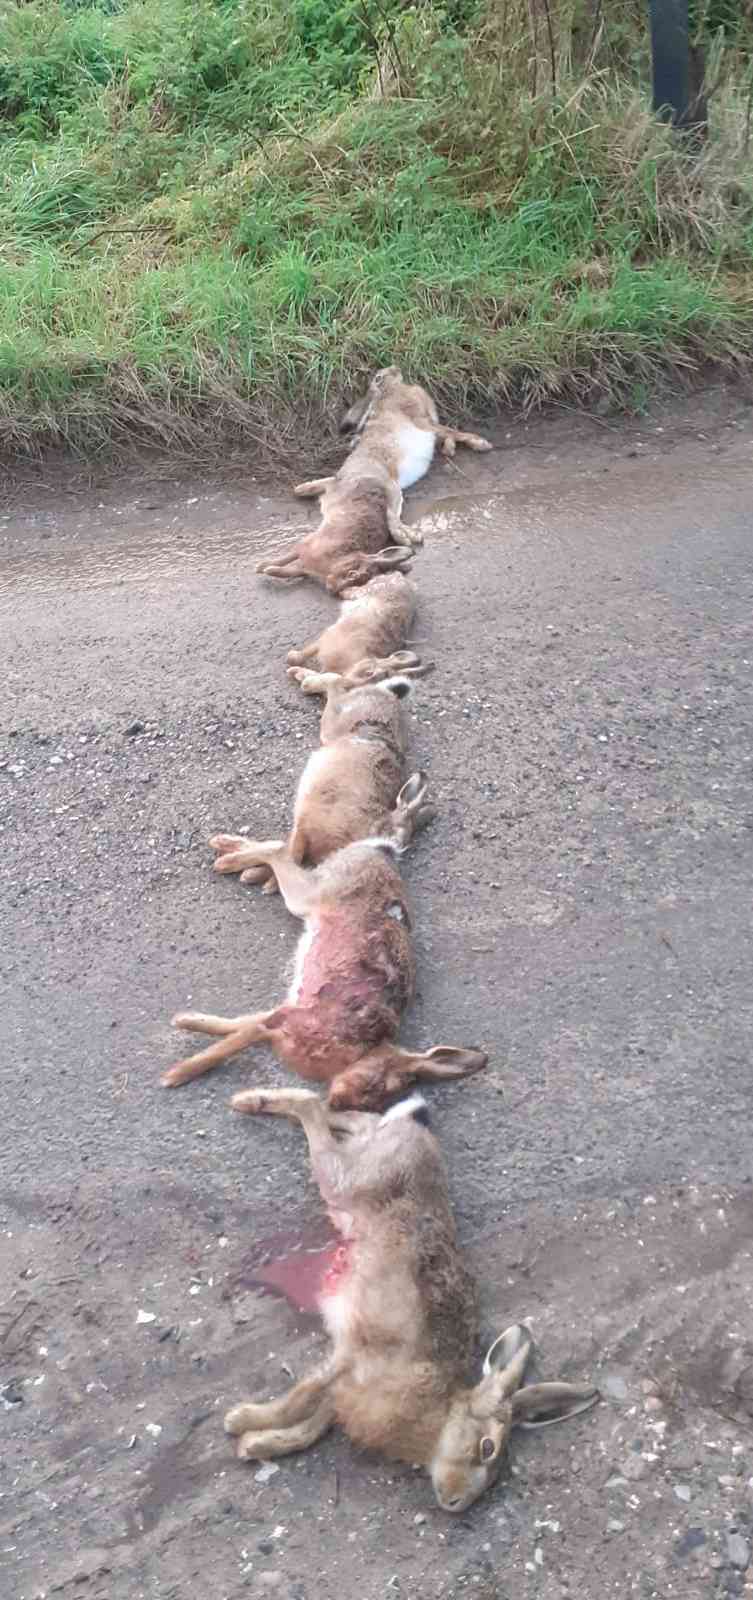 Philip Wilkinson, comisionado de policía y crimen de Wiltshire, tomó esta fotografía de cadáveres de liebres dejados en un camino cerca de su casa. Colegas creen que podrían haber sido dejados como advertencia